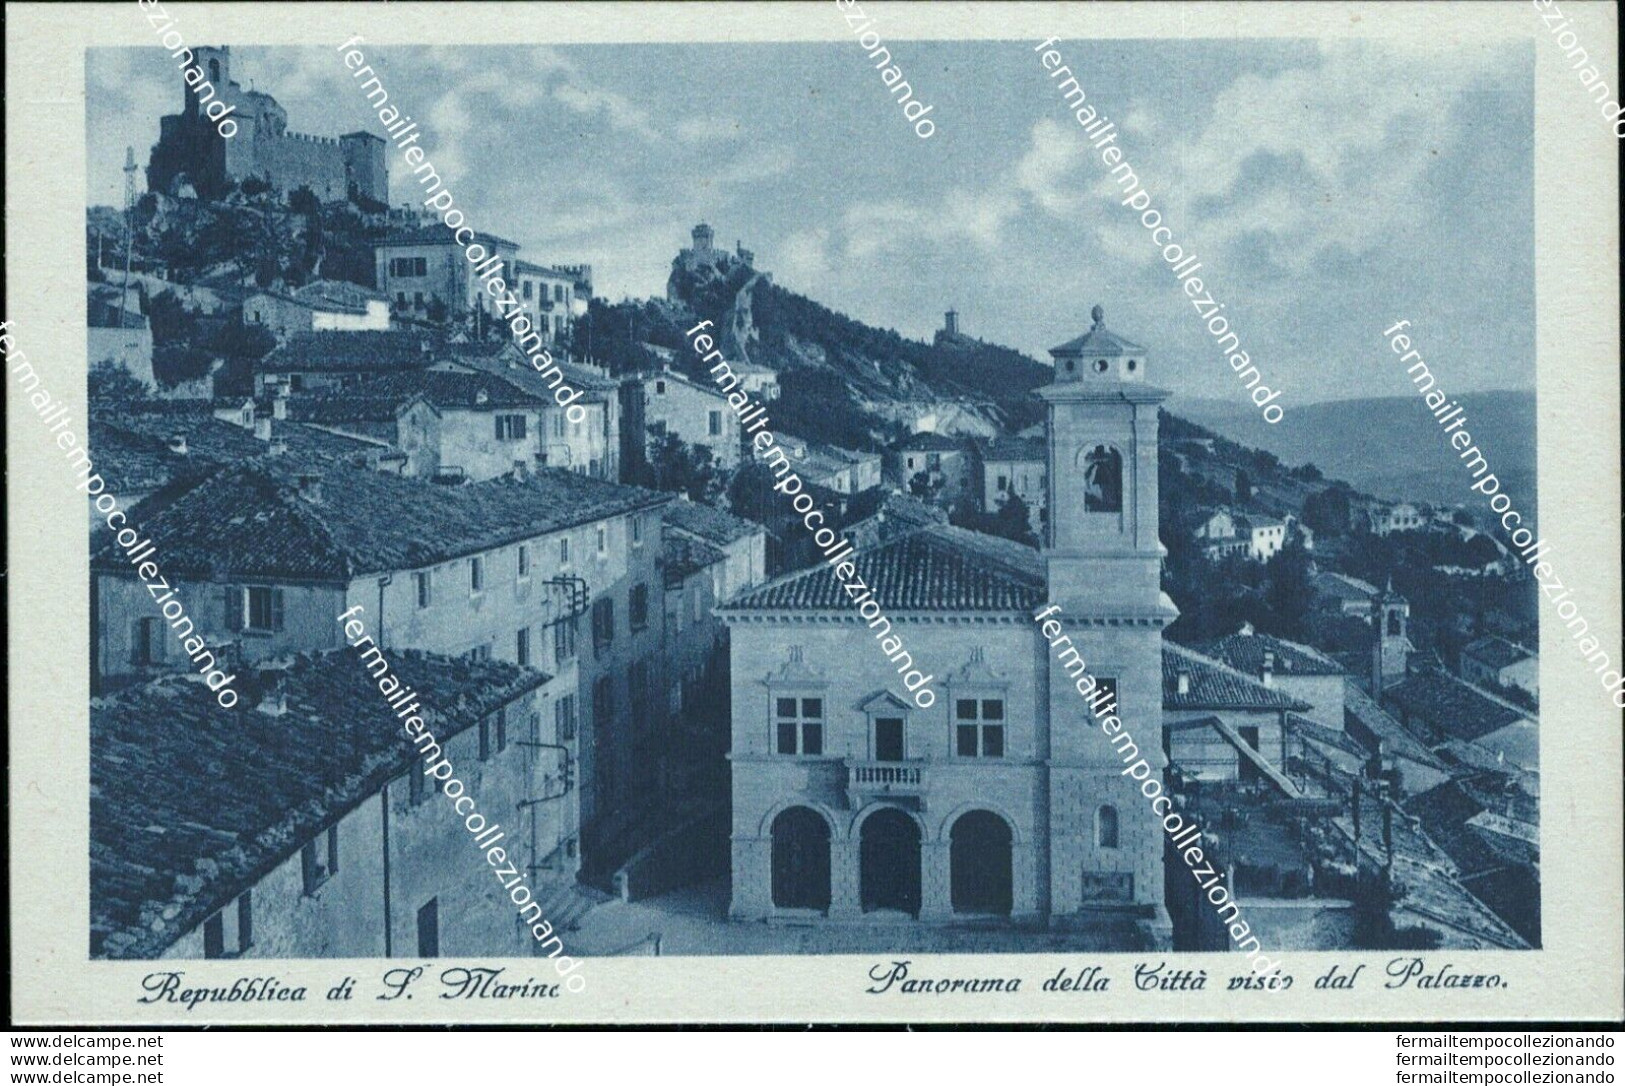 Ba15 Cartolina Repubblica Di San Marino Panorama Della Citta' Visto Dal Palazzo - Saint-Marin